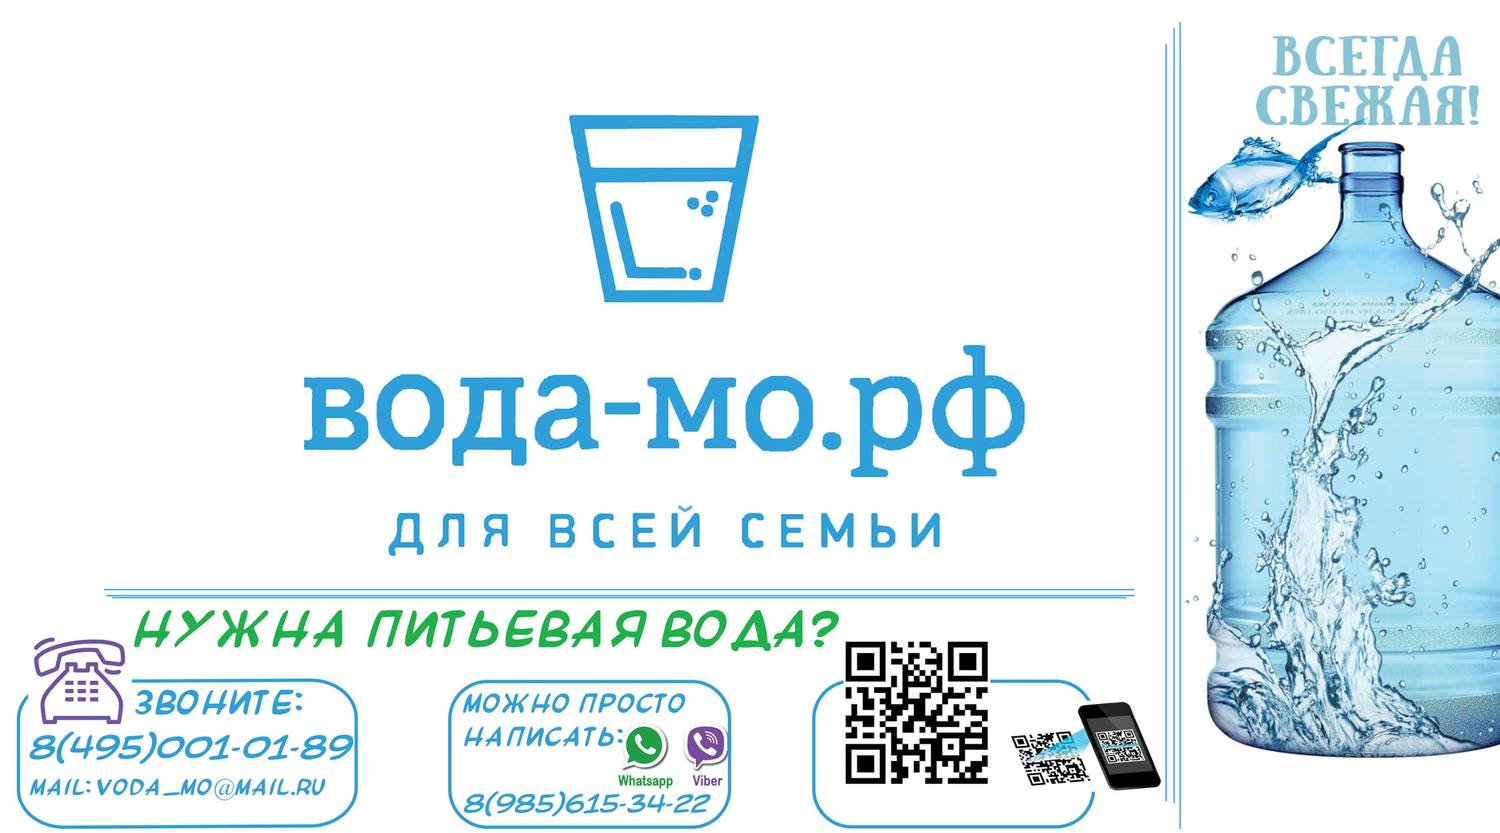 Питьевая вода московская область. Чистая питьевая вода на розлив. Розлив питьевой воды реклама. Вода питьевая 19л Подольск. Самая дешевая питьевая вода 19 л.